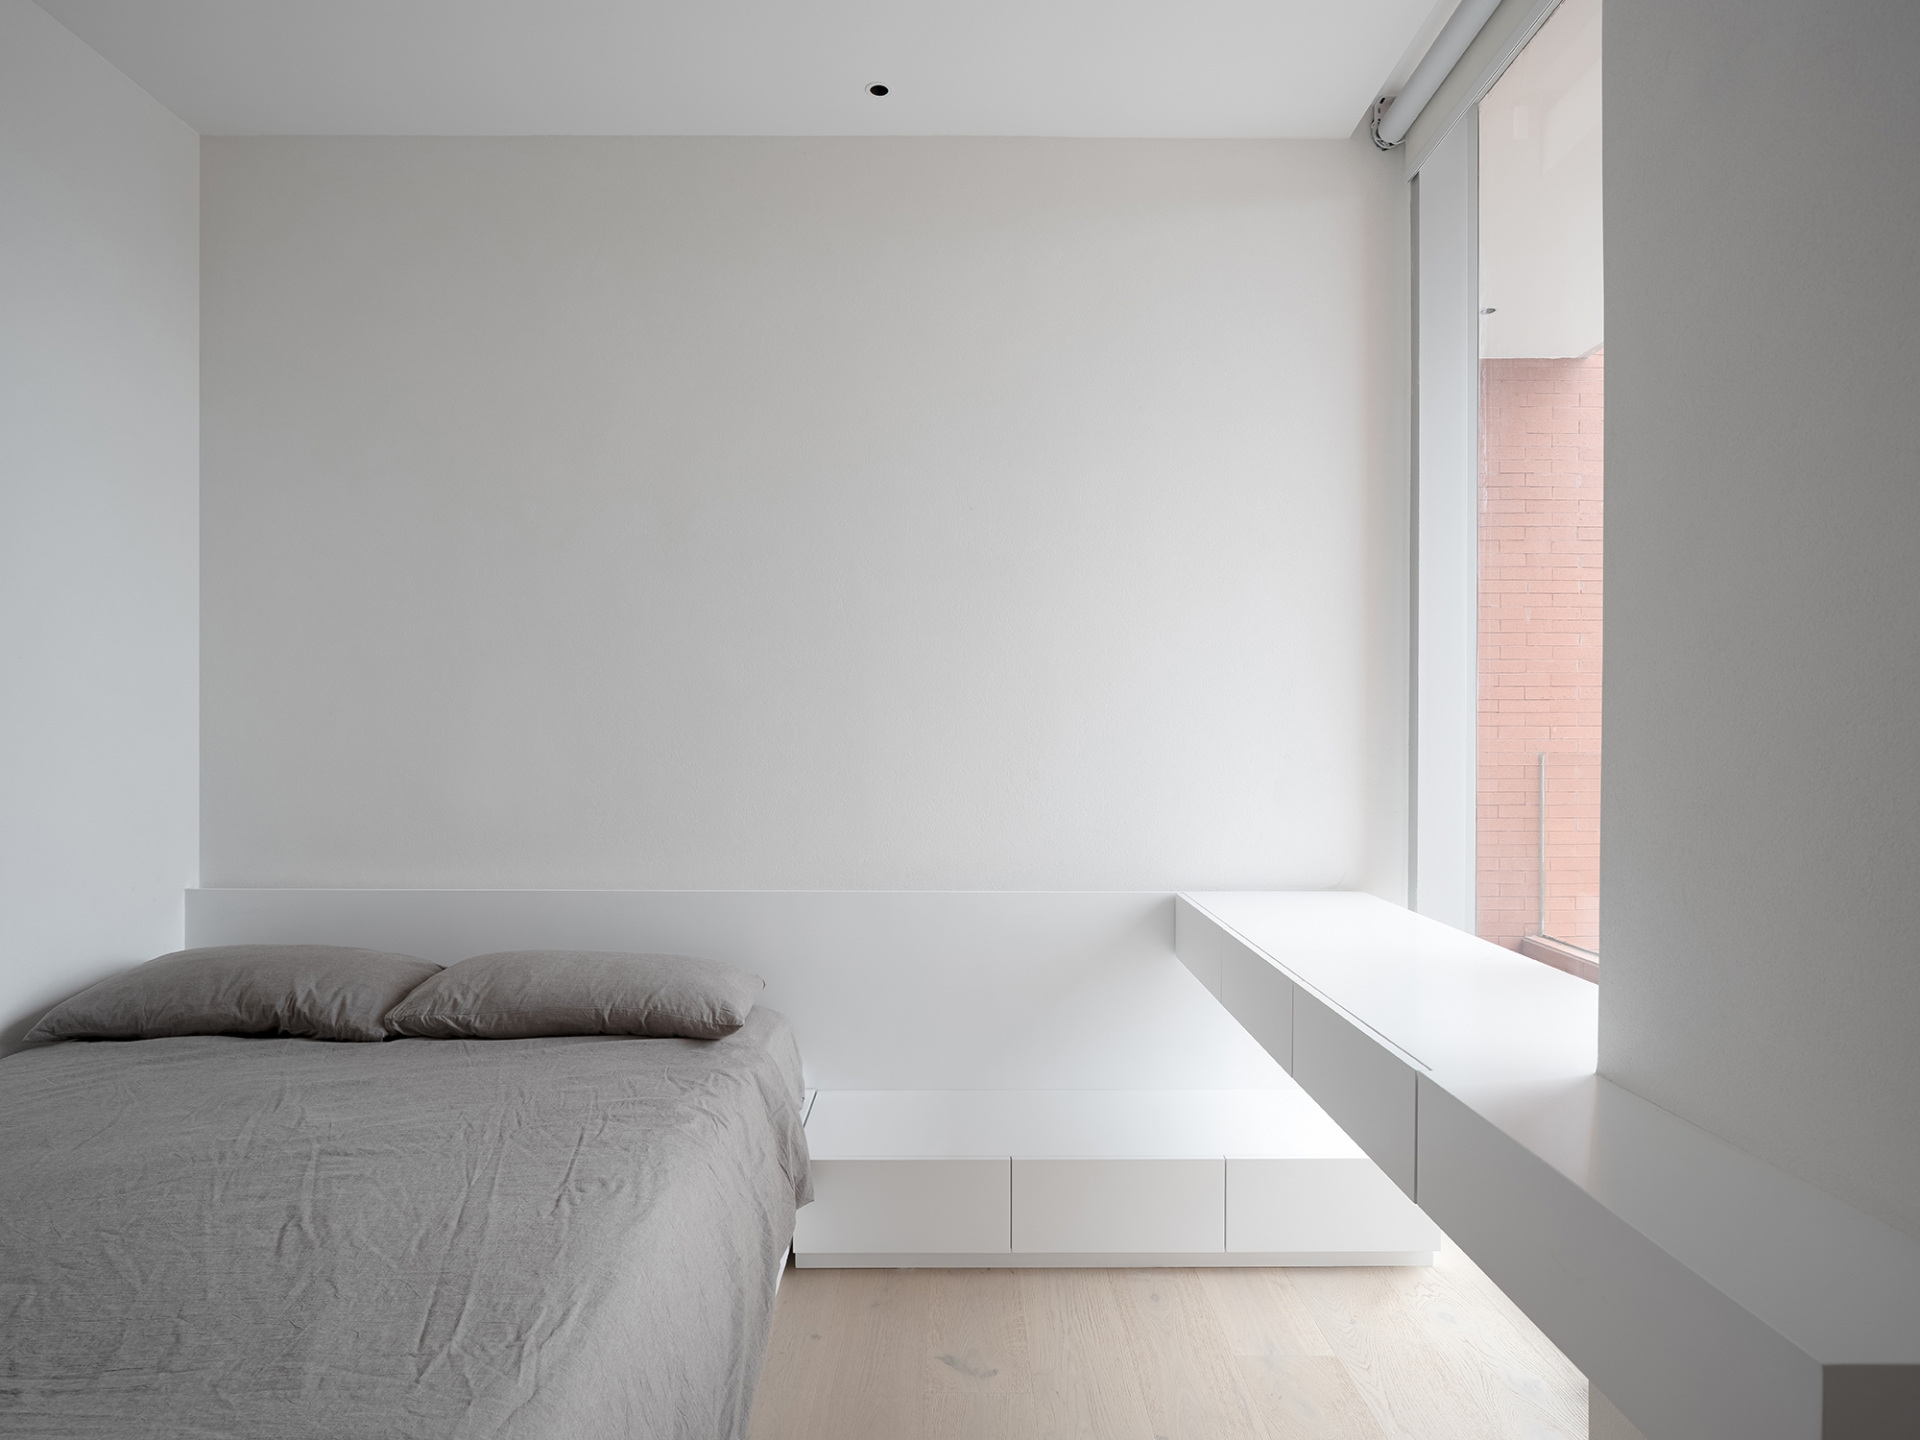 Phòng ngủ chính và phòng ngủ cho khách đều được thiết kế tối giản với gam màu trắng - xám, tiết chế nội thất tối đa để tạo sự rộng rãi. 